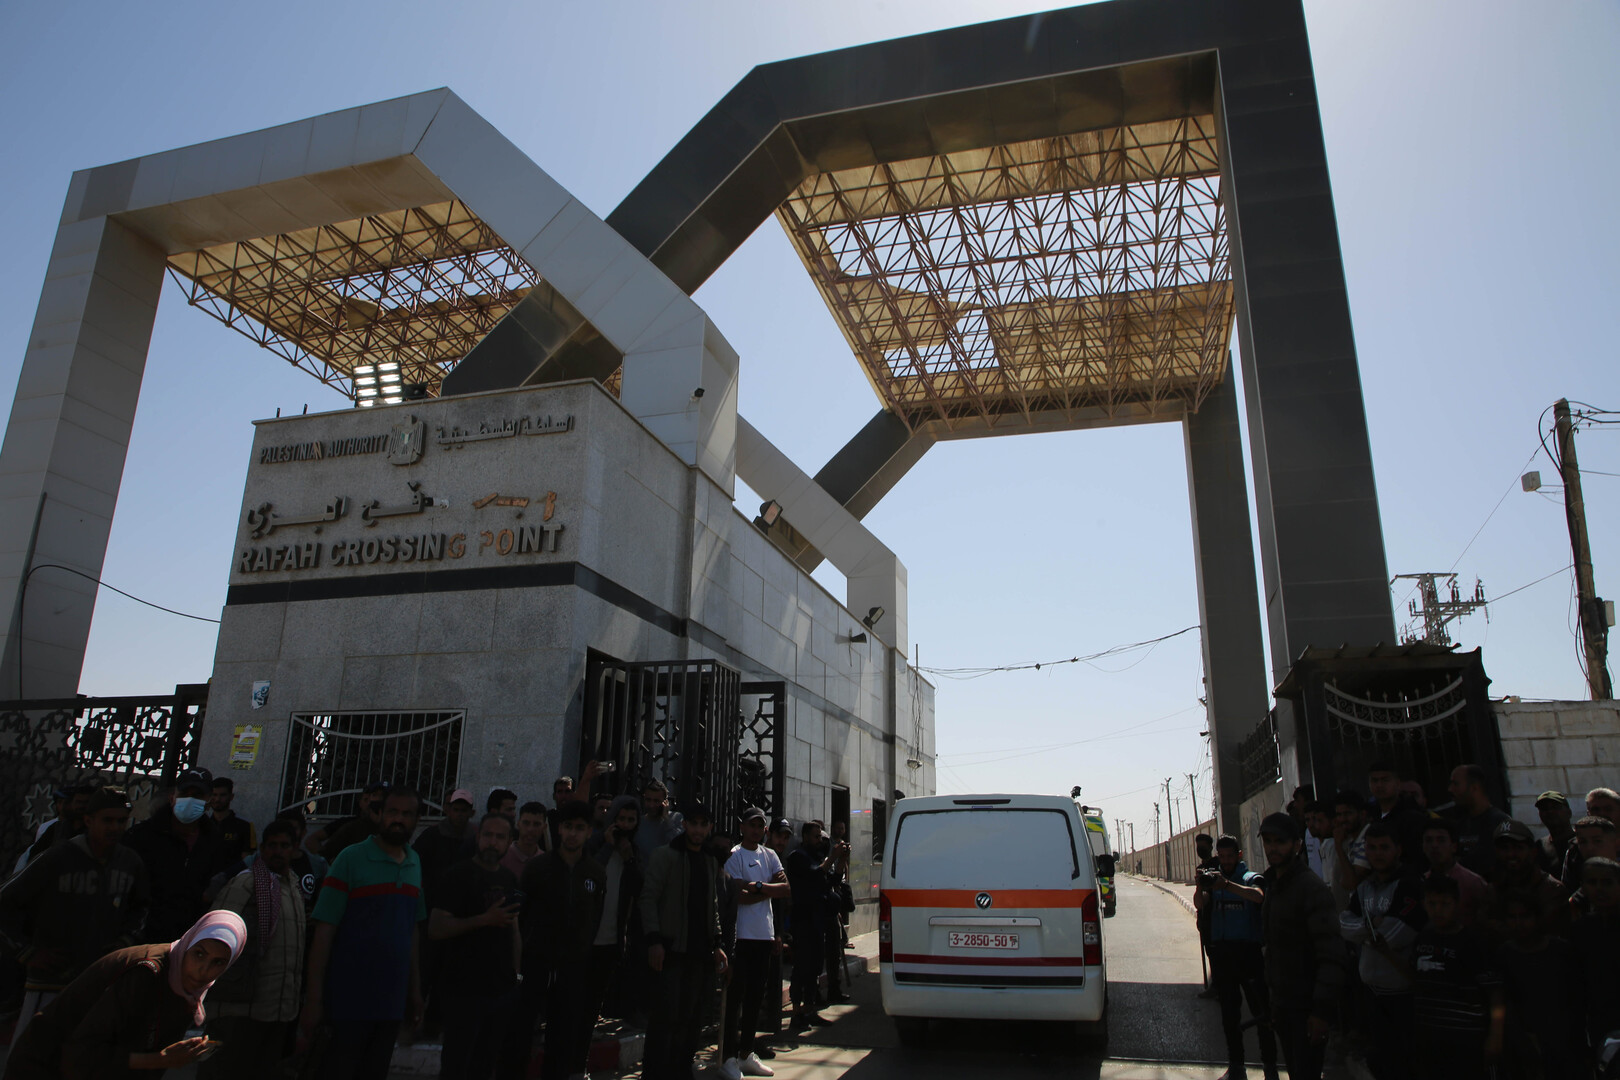 مسؤول مصري: معبر رفح غير مغلق حتى اللحظة أمام حركة المسافرين لكن شاحنات المساعدات متوقفة